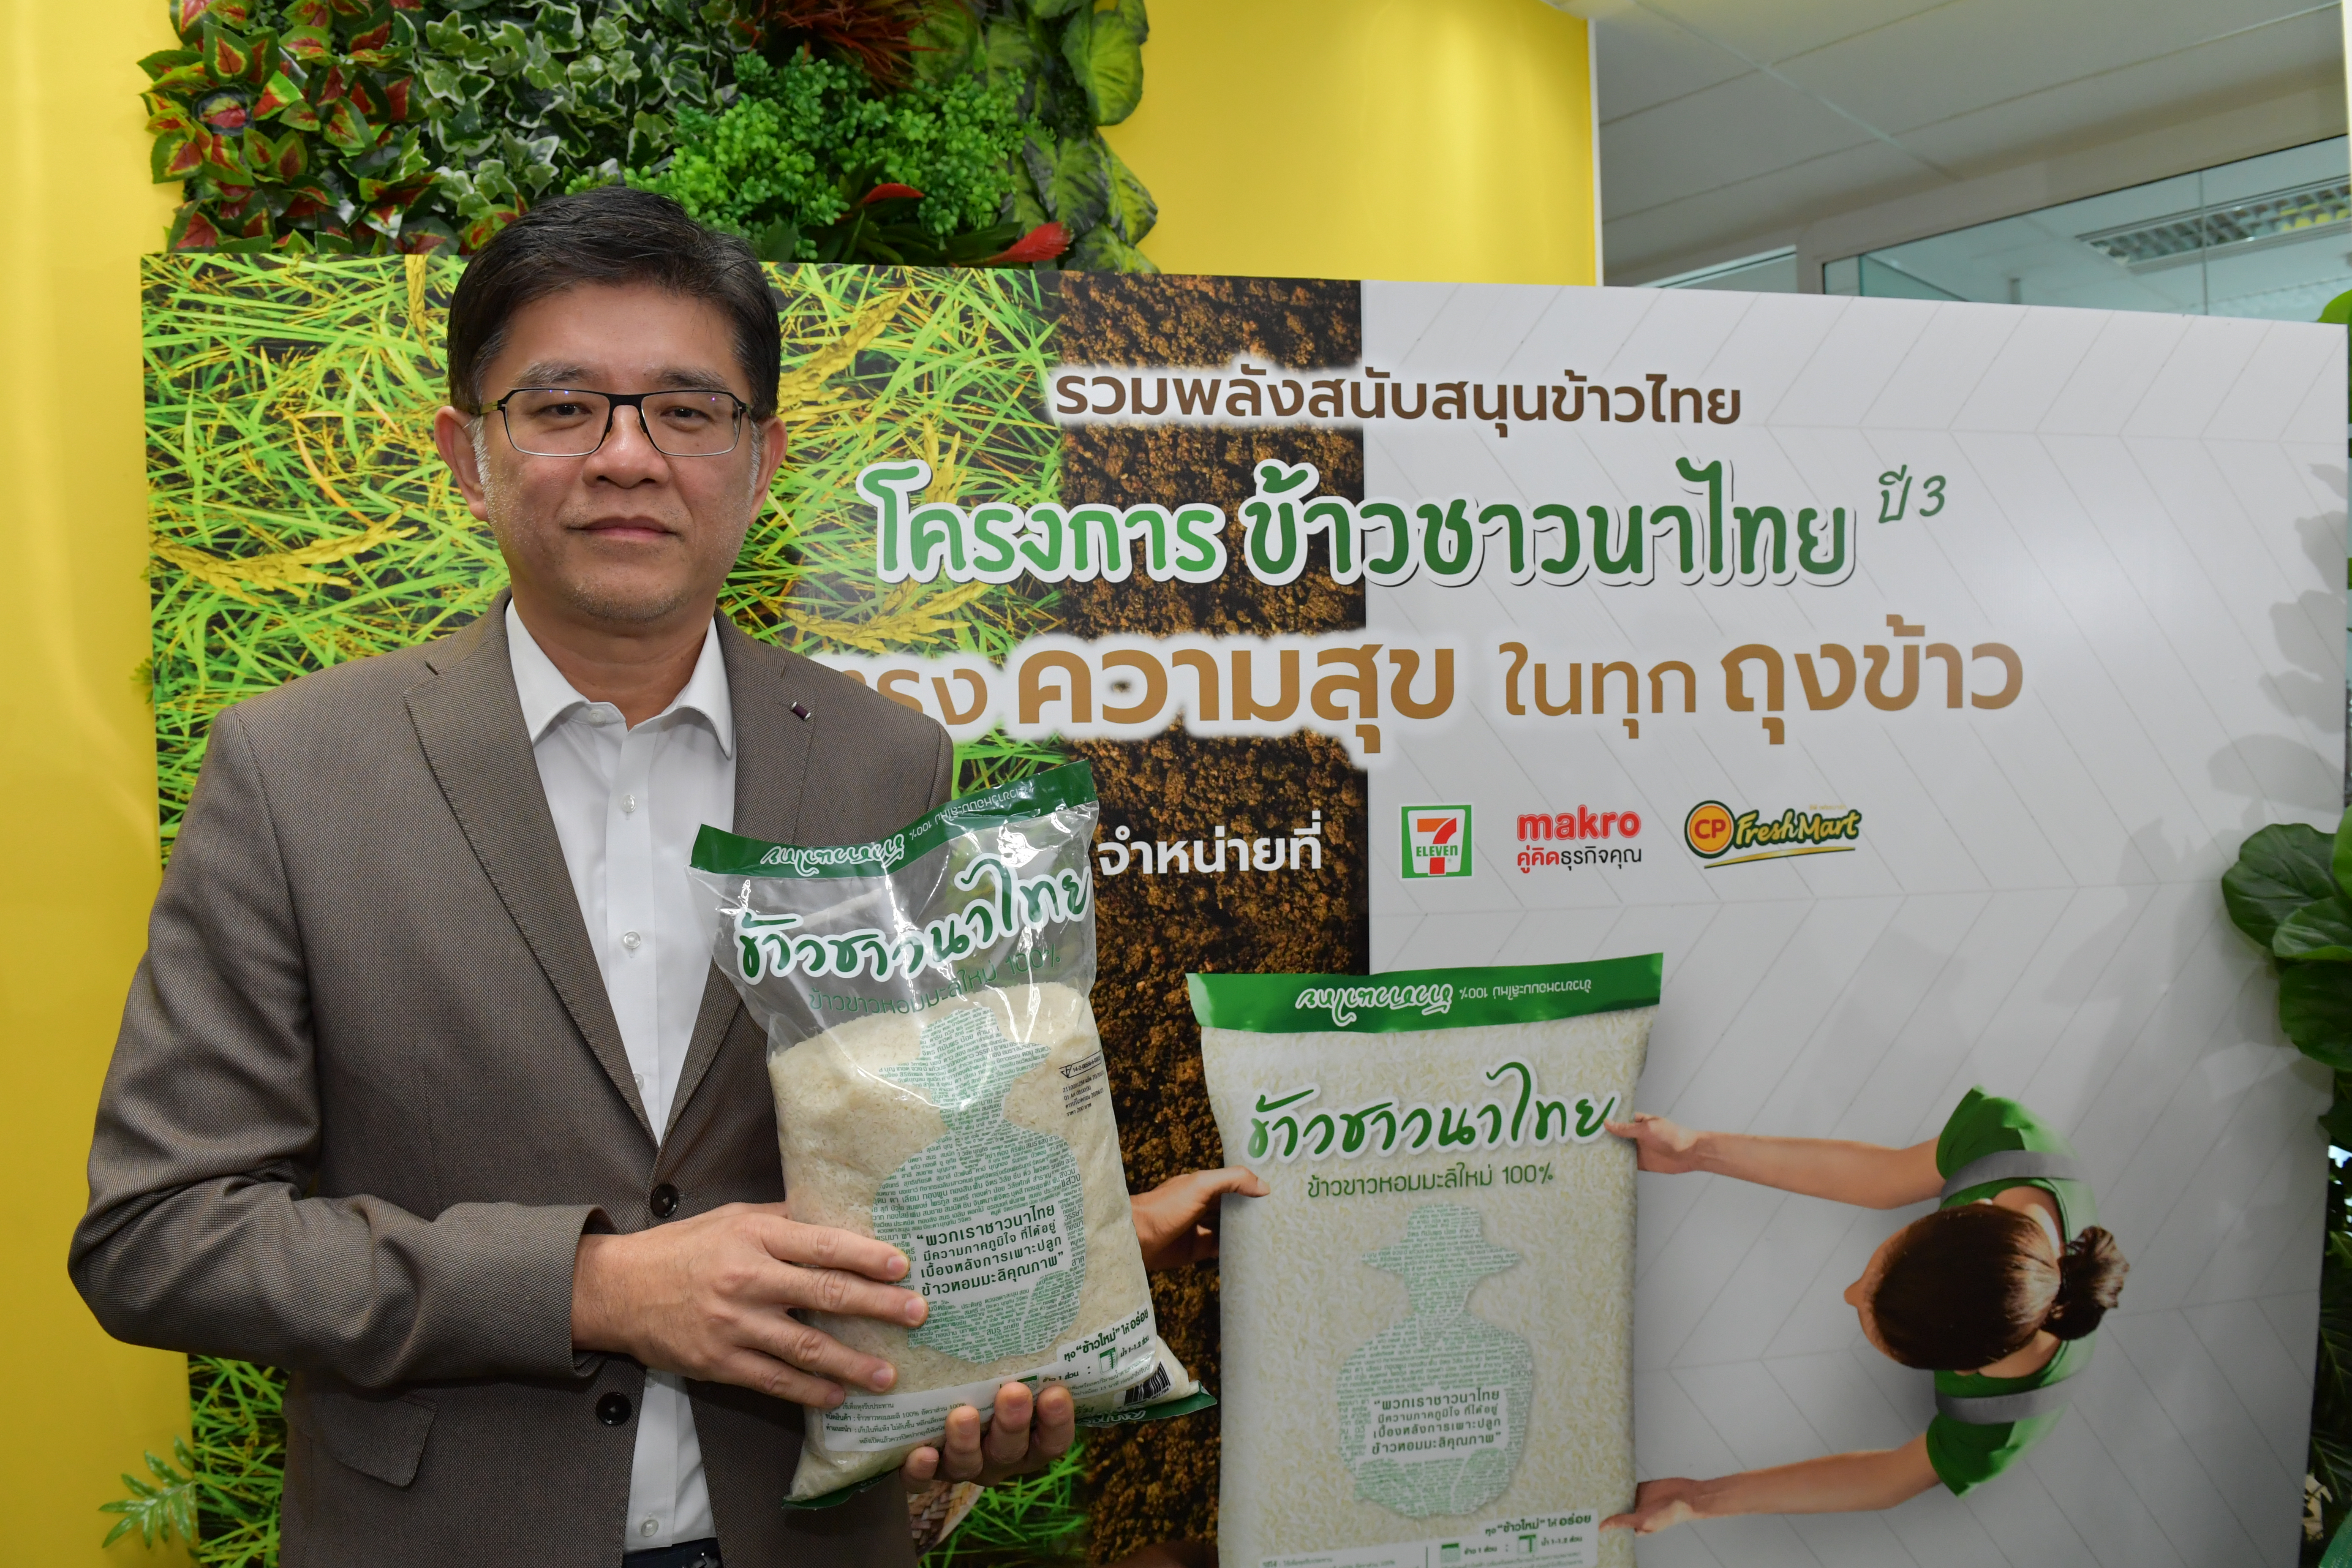 "ตราฉัตร" ผนึกกำลังพันธมิตรเครือเจริญโภคภัณฑ์ ขับเคลื่อน “ข้าวชาวนาไทย” ปี 3 ช่วยเกษตรกรขายข้าว